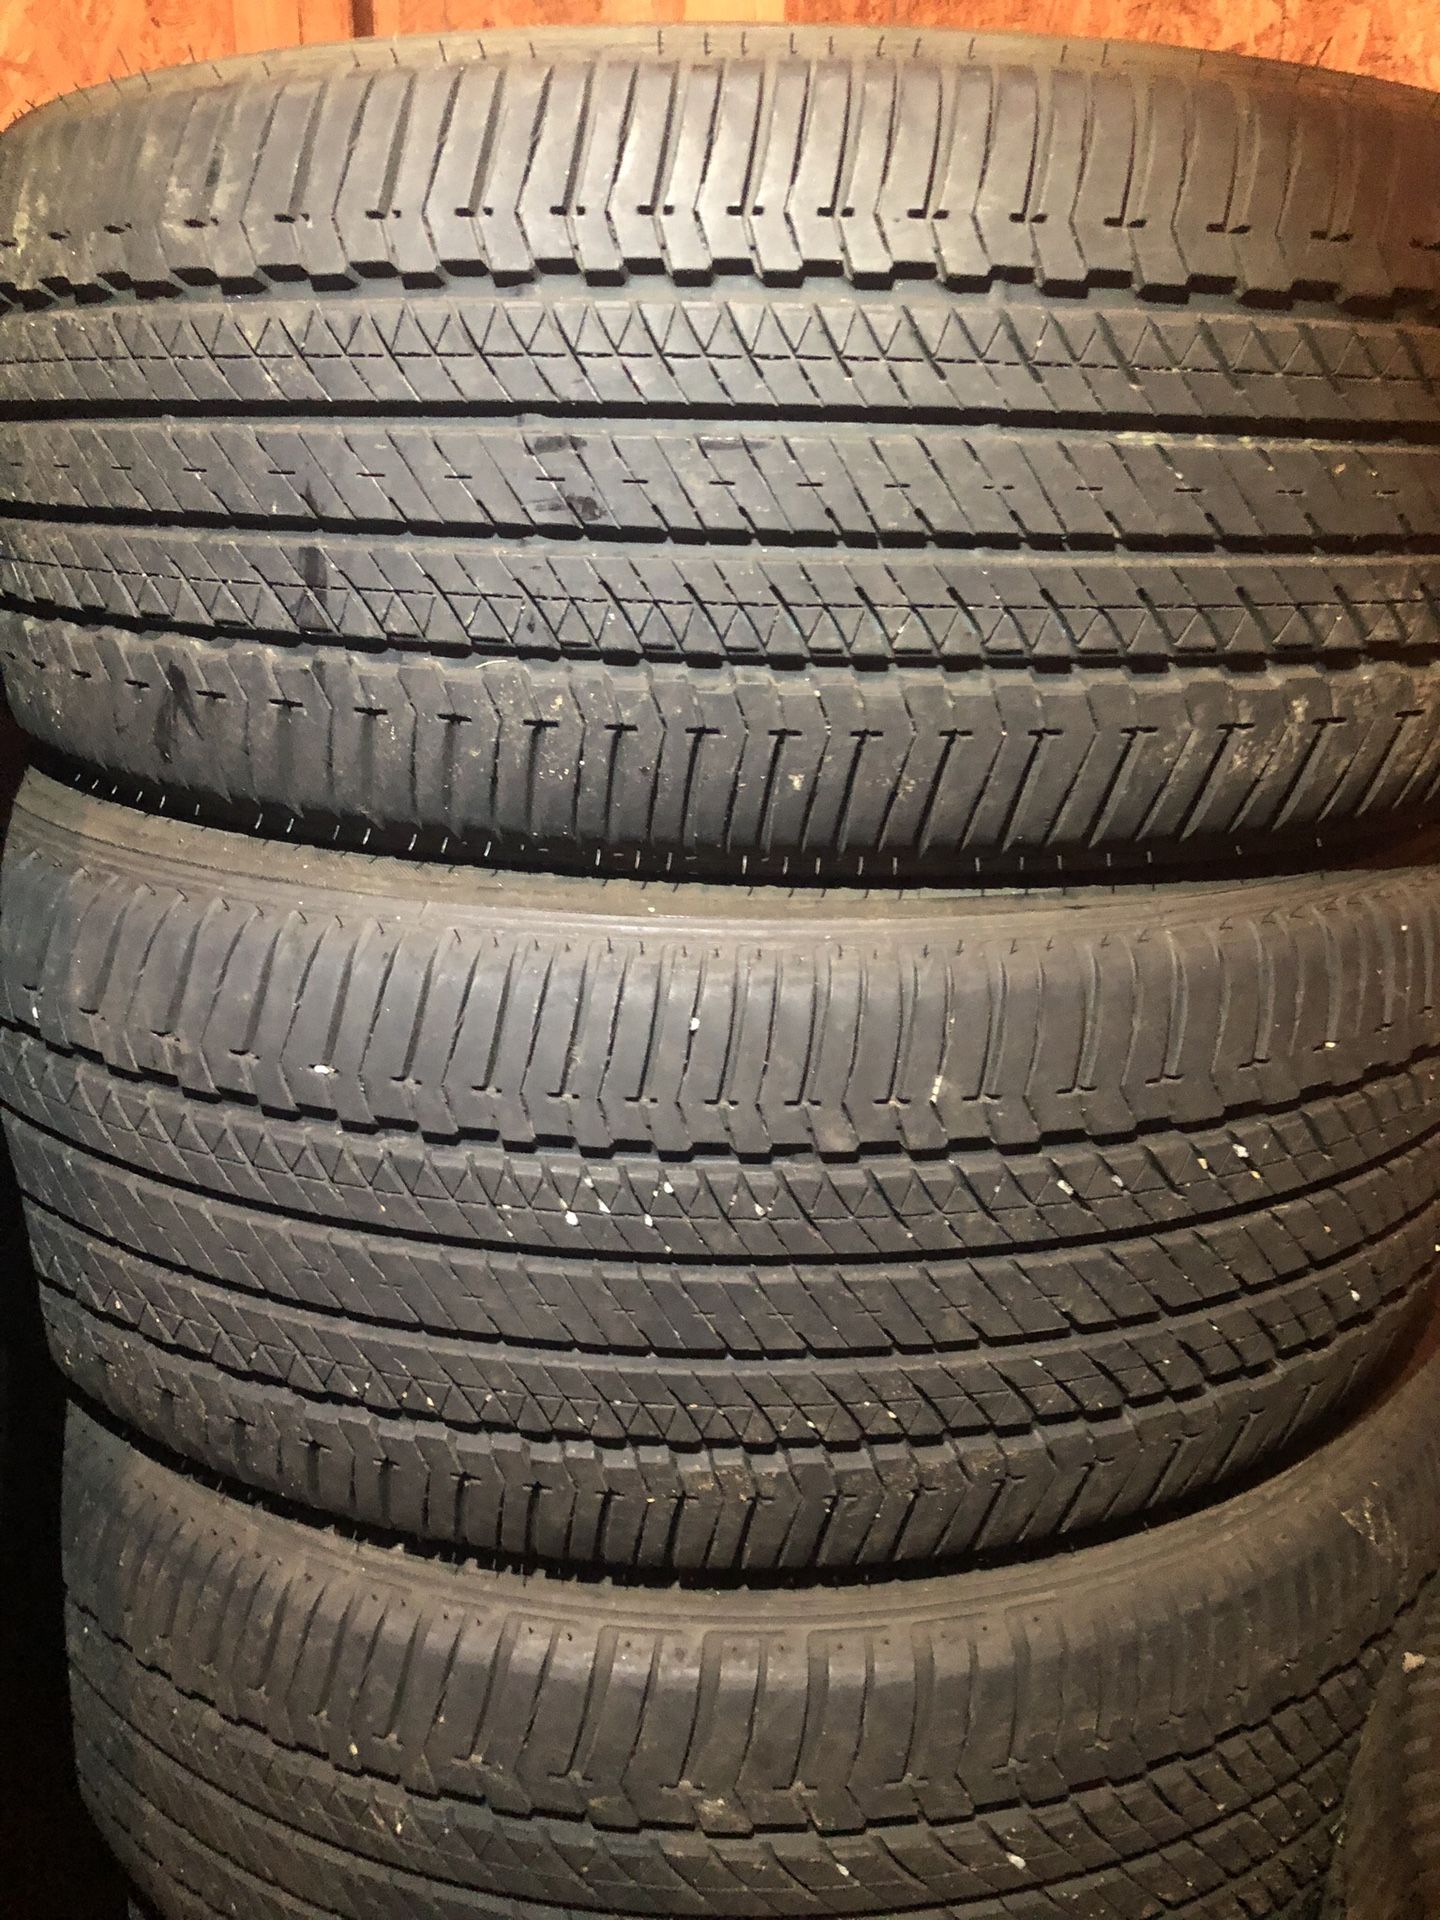 4 good use tires Bridgestone 245/60/18